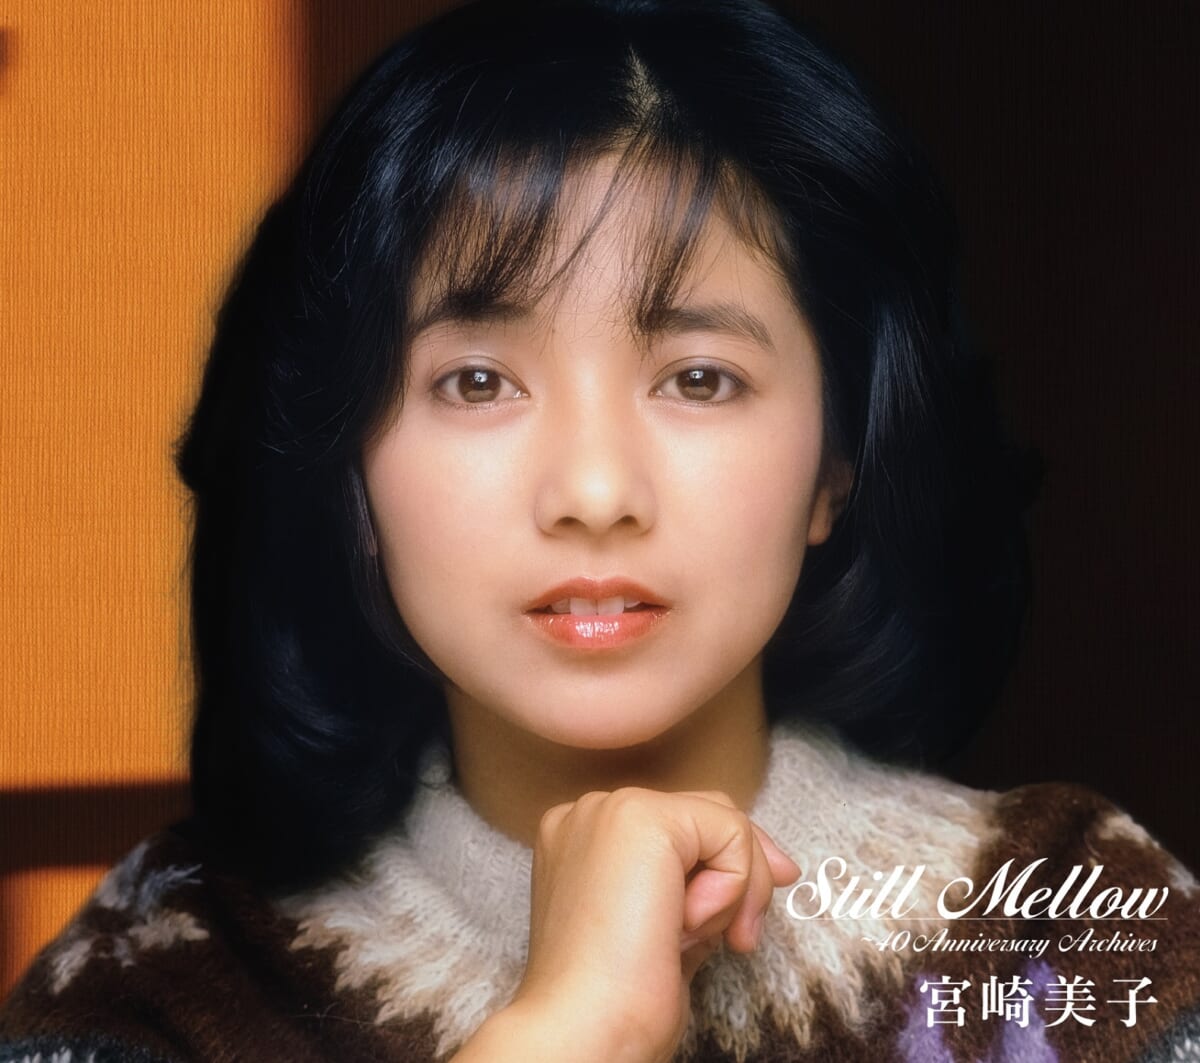 宮崎美子『スティル・メロウ ～40thアニバーサリー・アーカイブス』限定盤